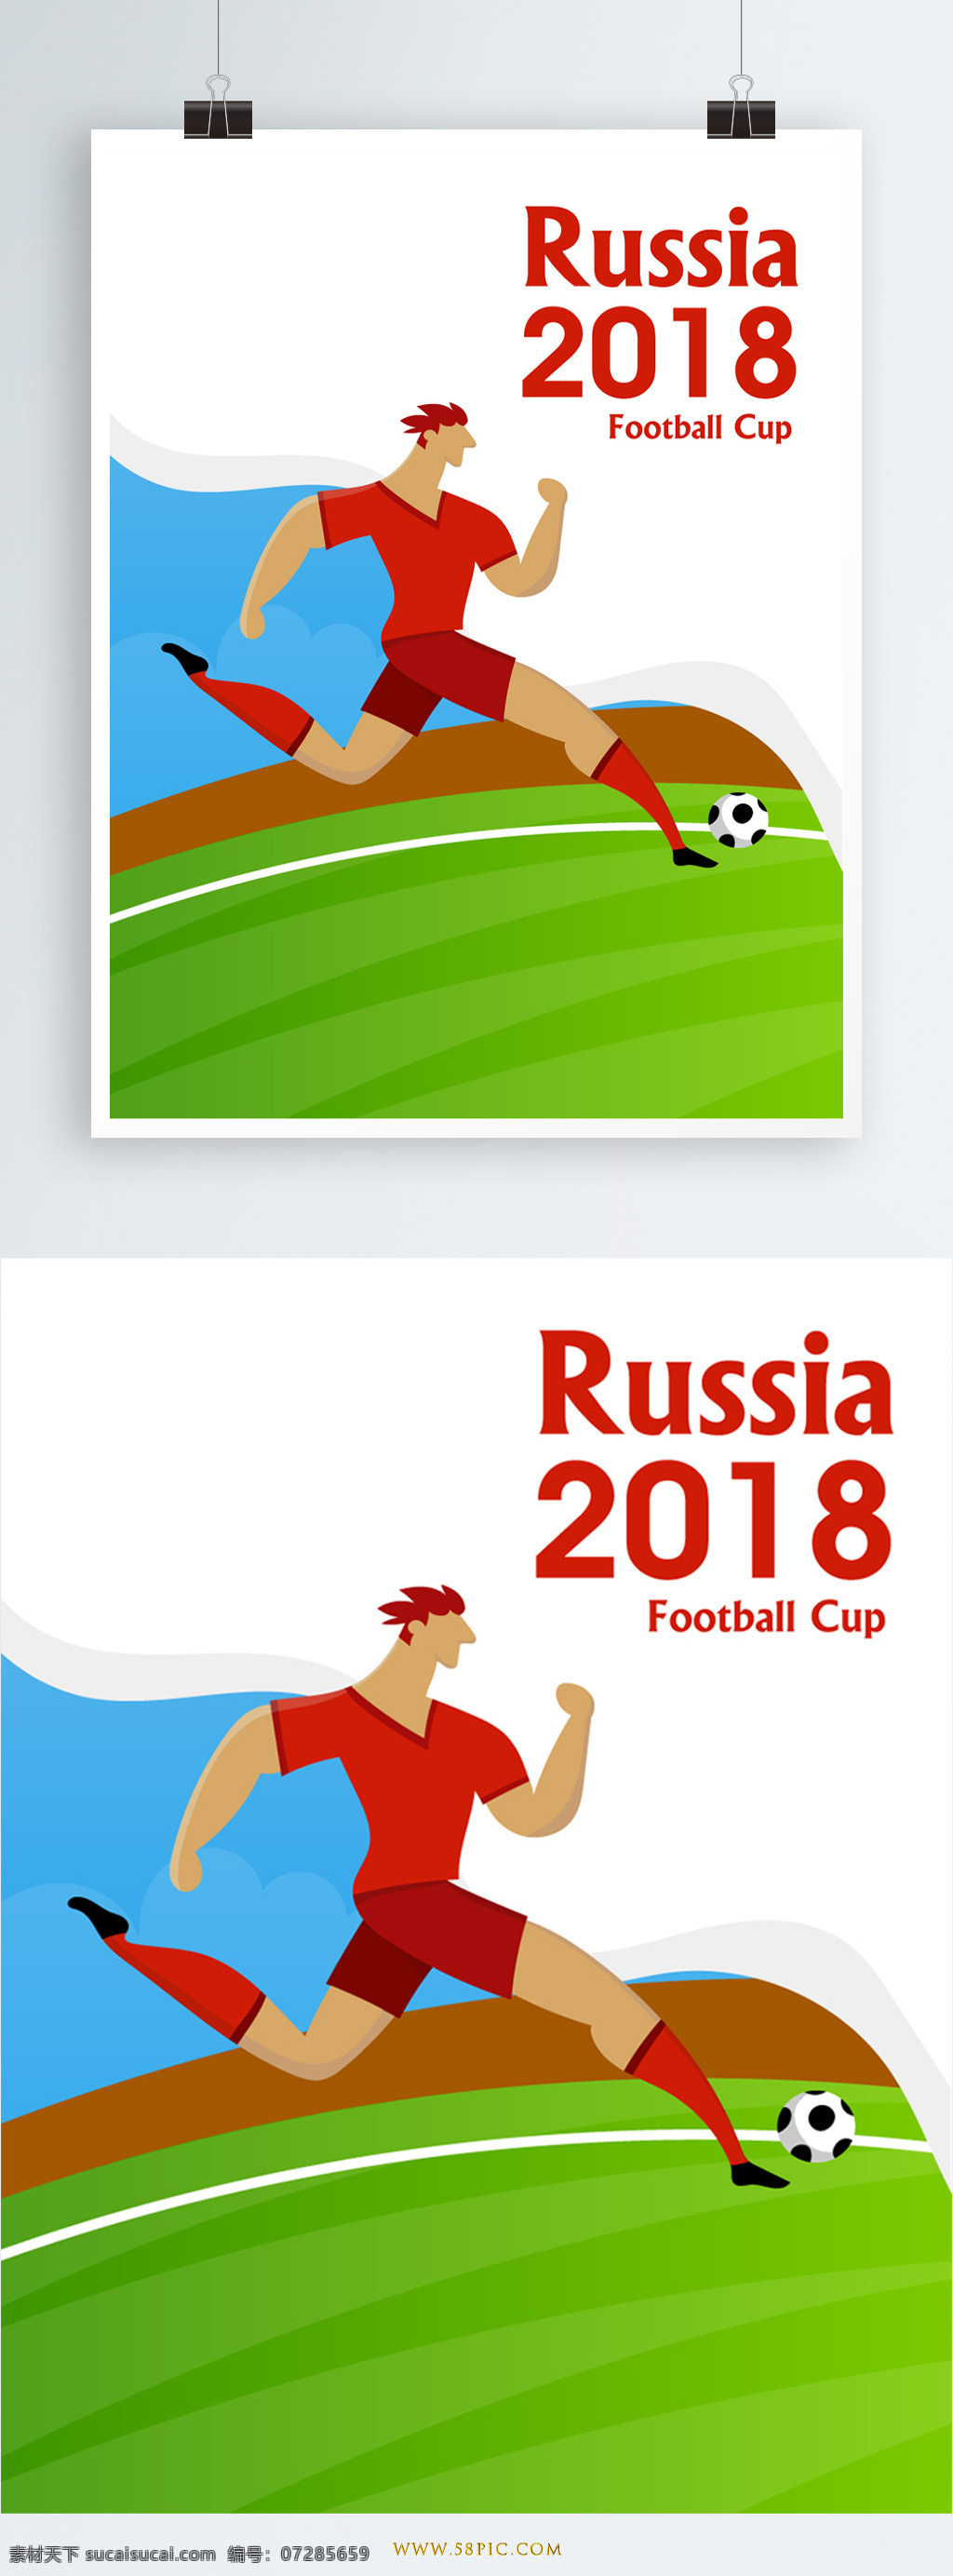 世界杯 原创 矢量 运球 元素 彩色 海报素材 足球 标题 2018 俄罗斯 俄罗斯世界杯 设计元素 logo 足球比赛 金杯 体育 比赛 世界杯比赛 矢量元素 世界杯元素 激情世界杯 嘉年华 足球季 球场 球赛